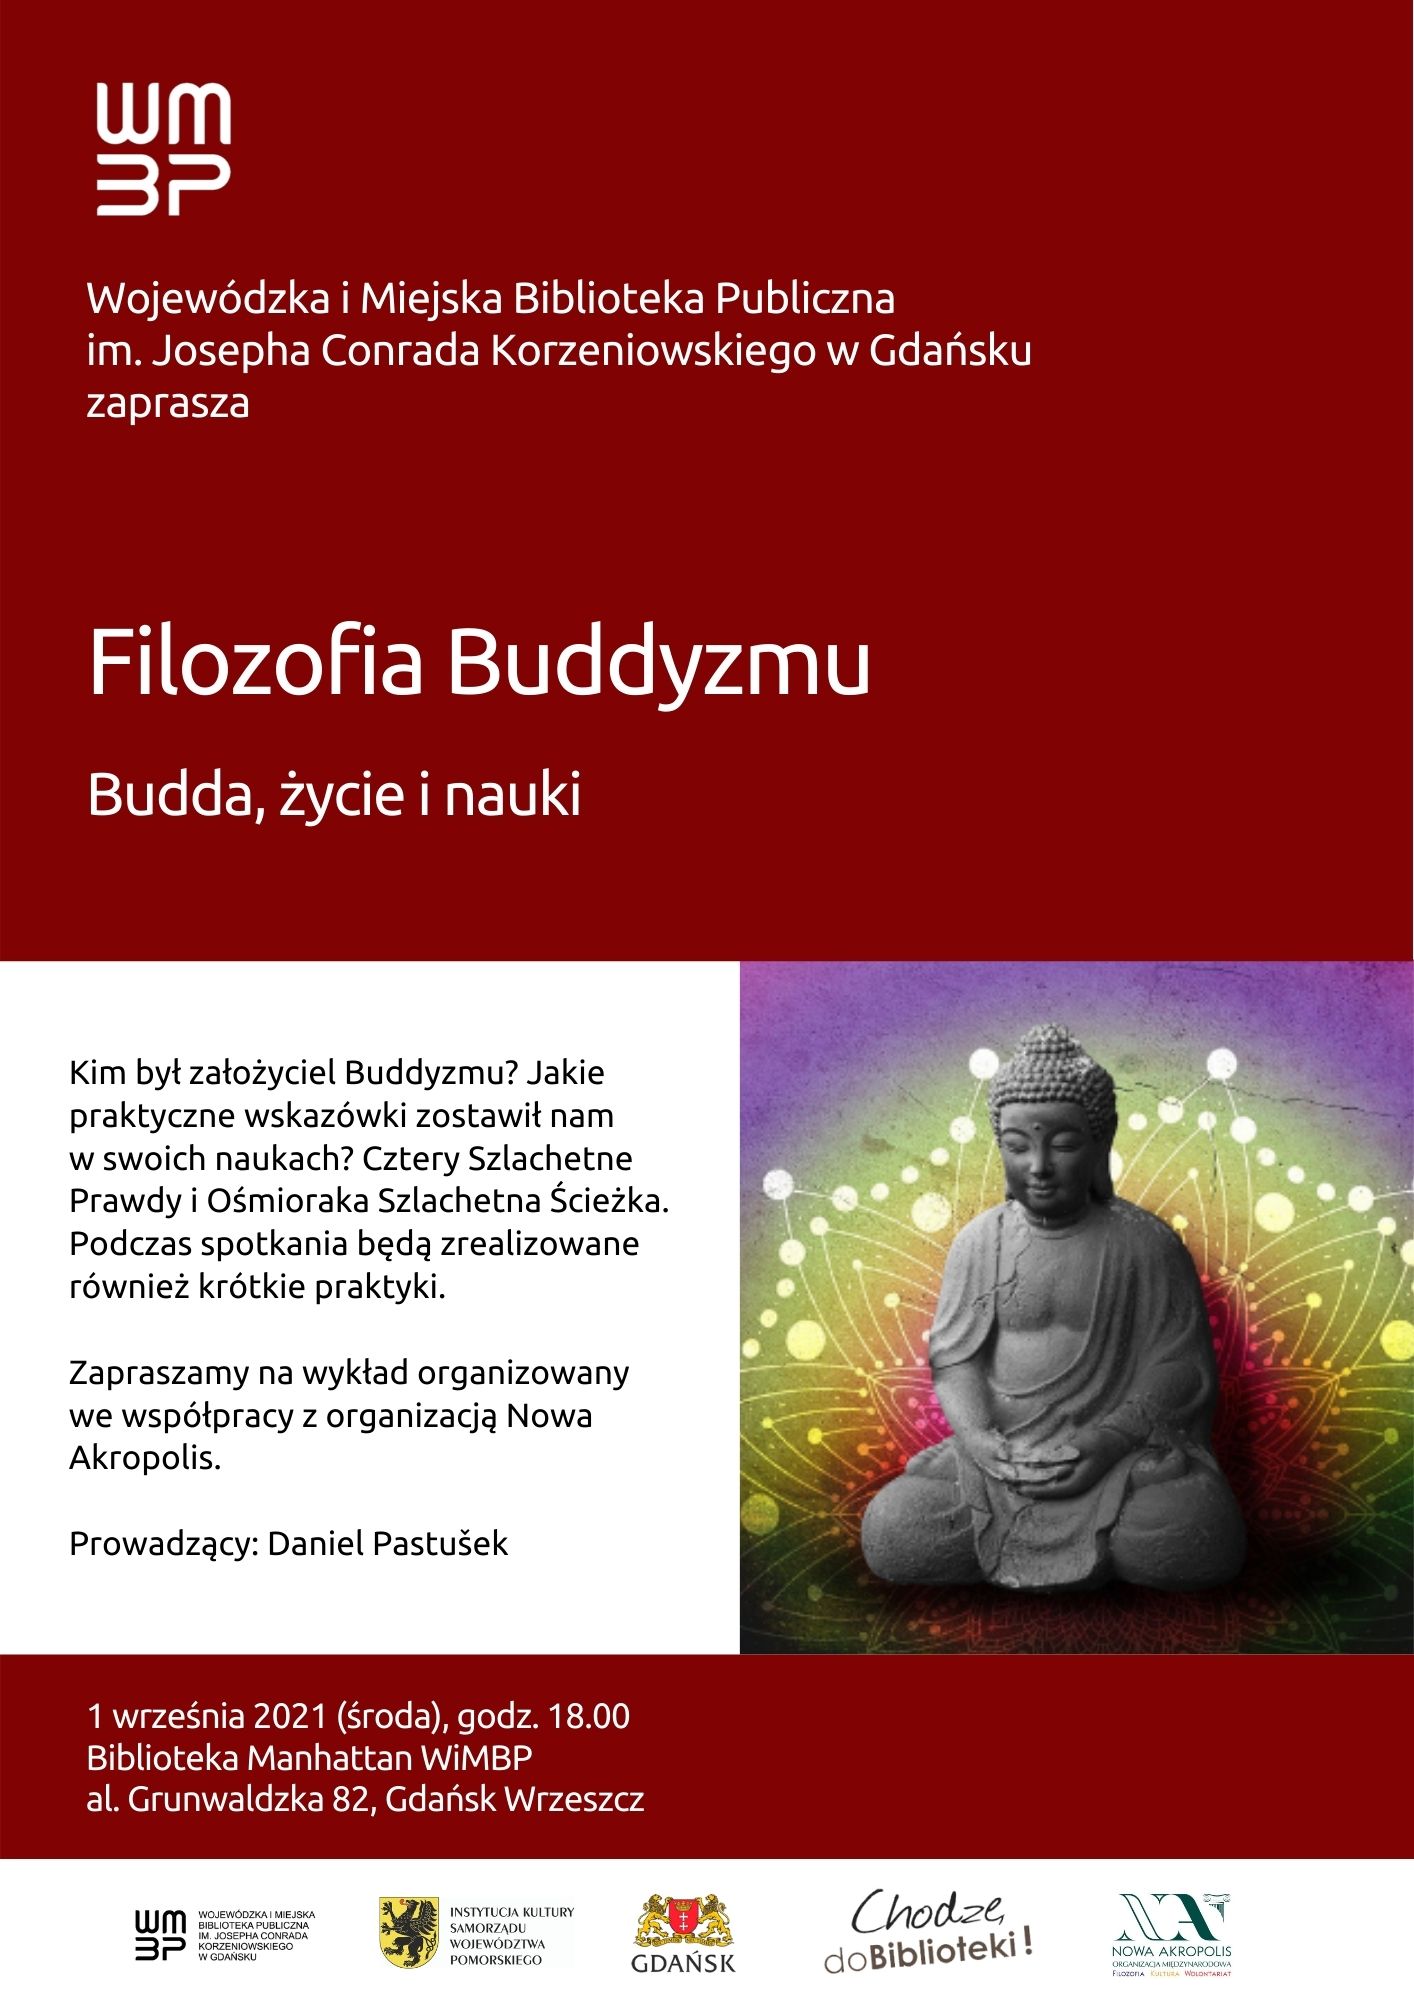 Filozofia Buddyzmu